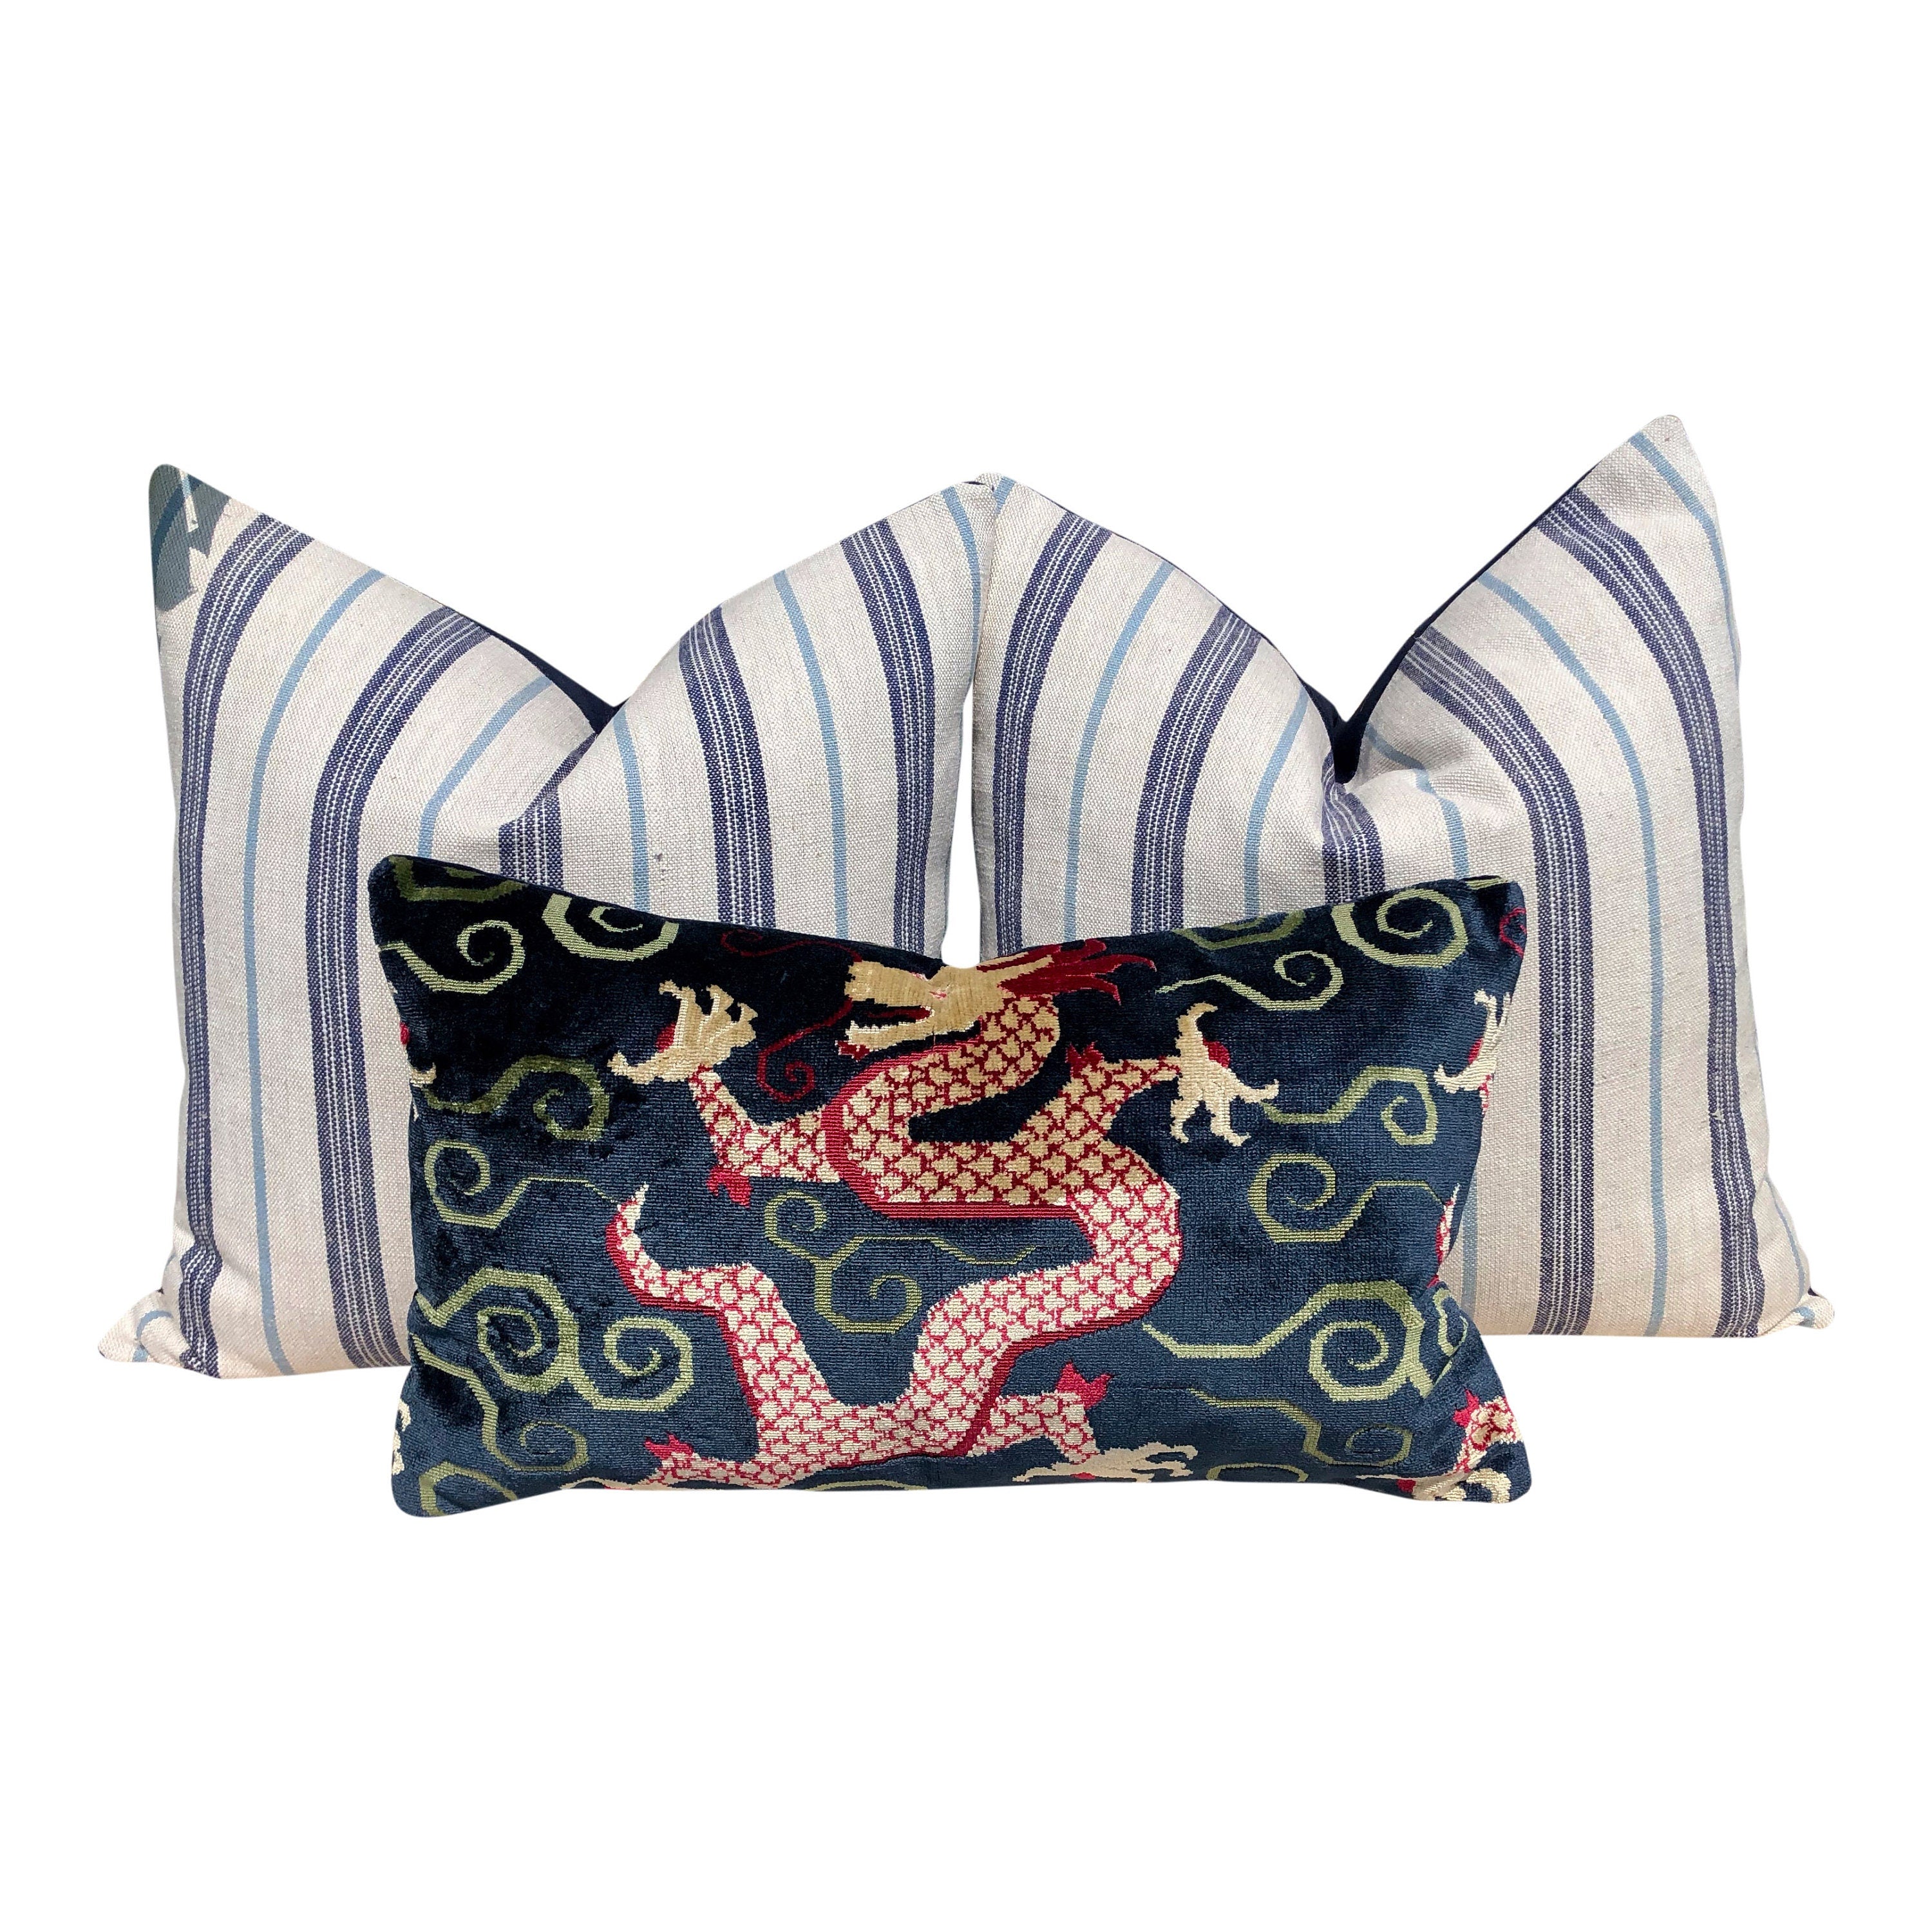 Schumacher Bixi Velvet Lumbar Pillow in Navy Blue. Dragon Velvet Pillow, Red Navy Chinoiserie Cushion, Asian Pillow Cover, Luxurious Pillow